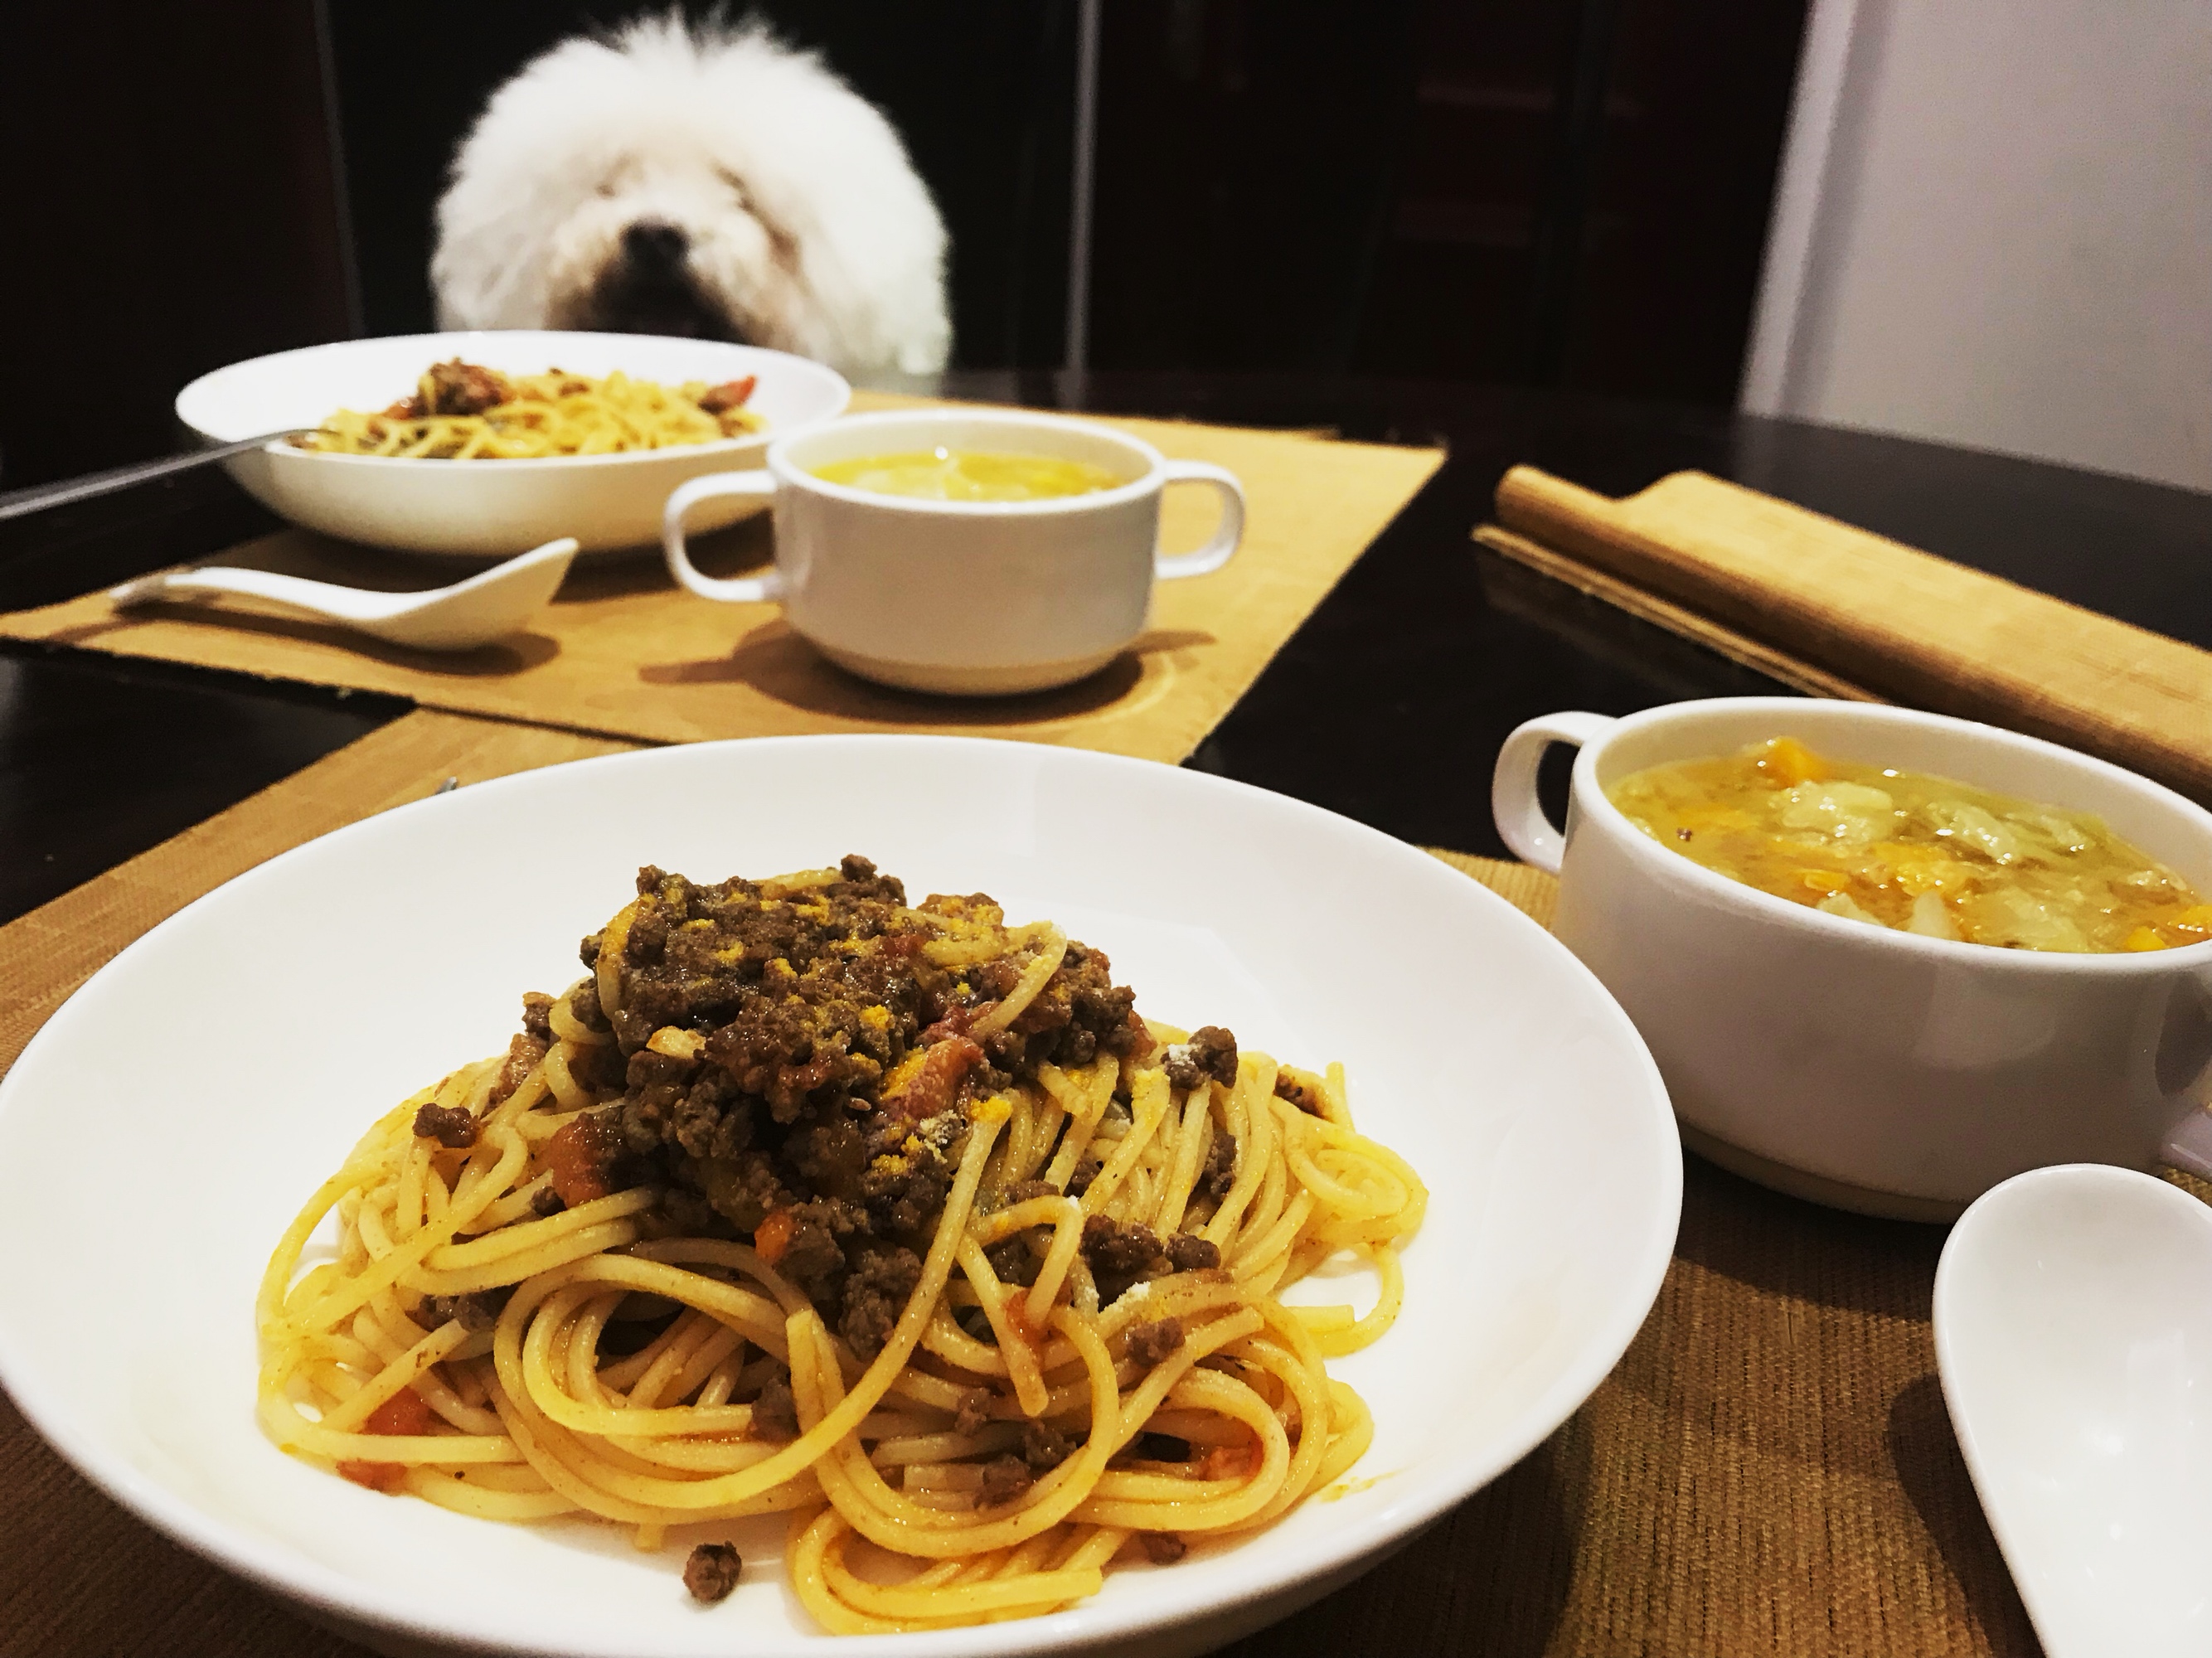 两个人一条狗的简单晚饭 — 番茄肉酱意面+蔬菜汤的做法